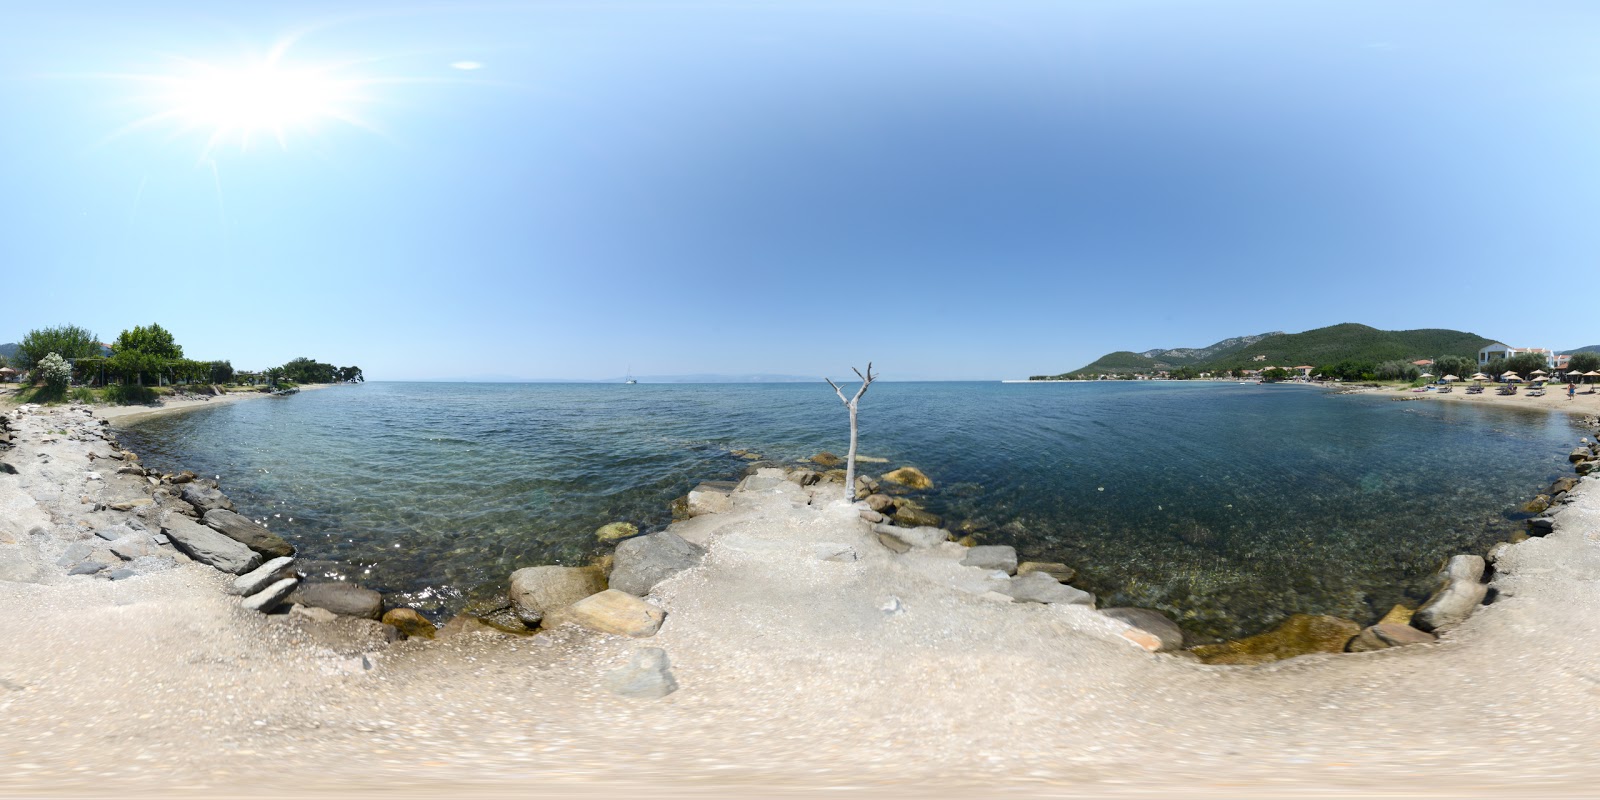 Zdjęcie Papias beach z przestronna zatoka